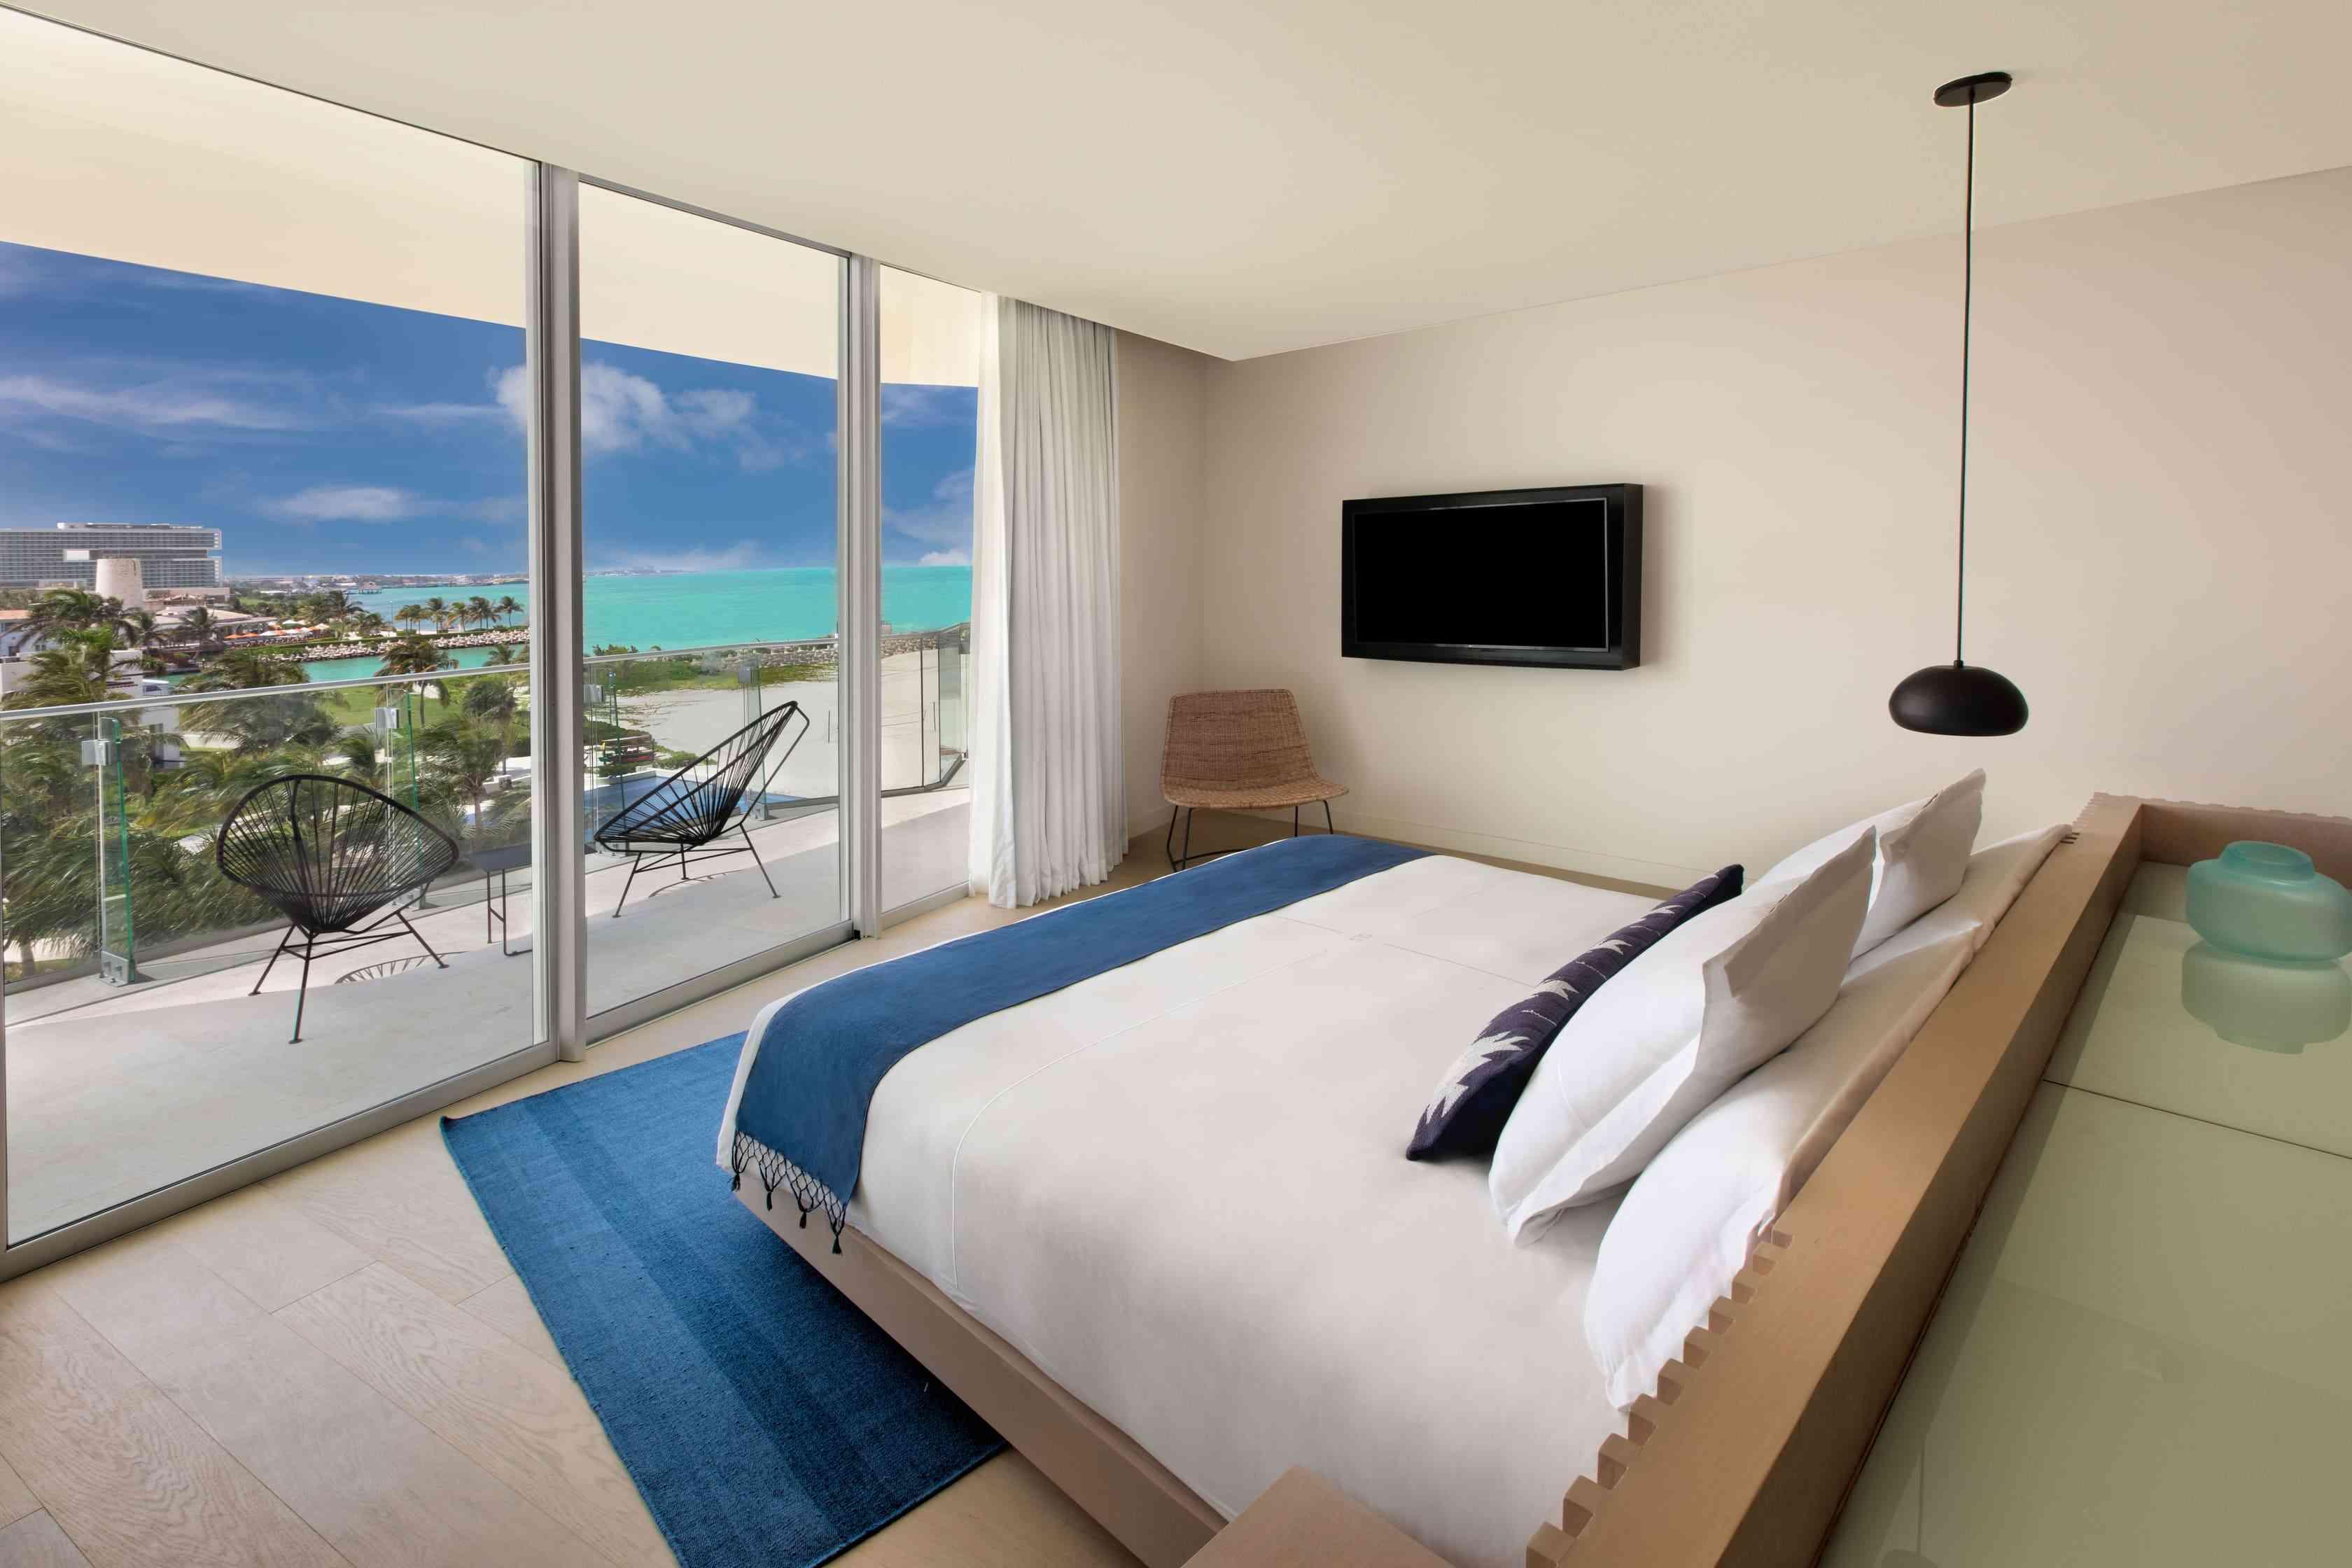 غرفة نوم مع سرير مواجه للشرفة المطلة على المحيط